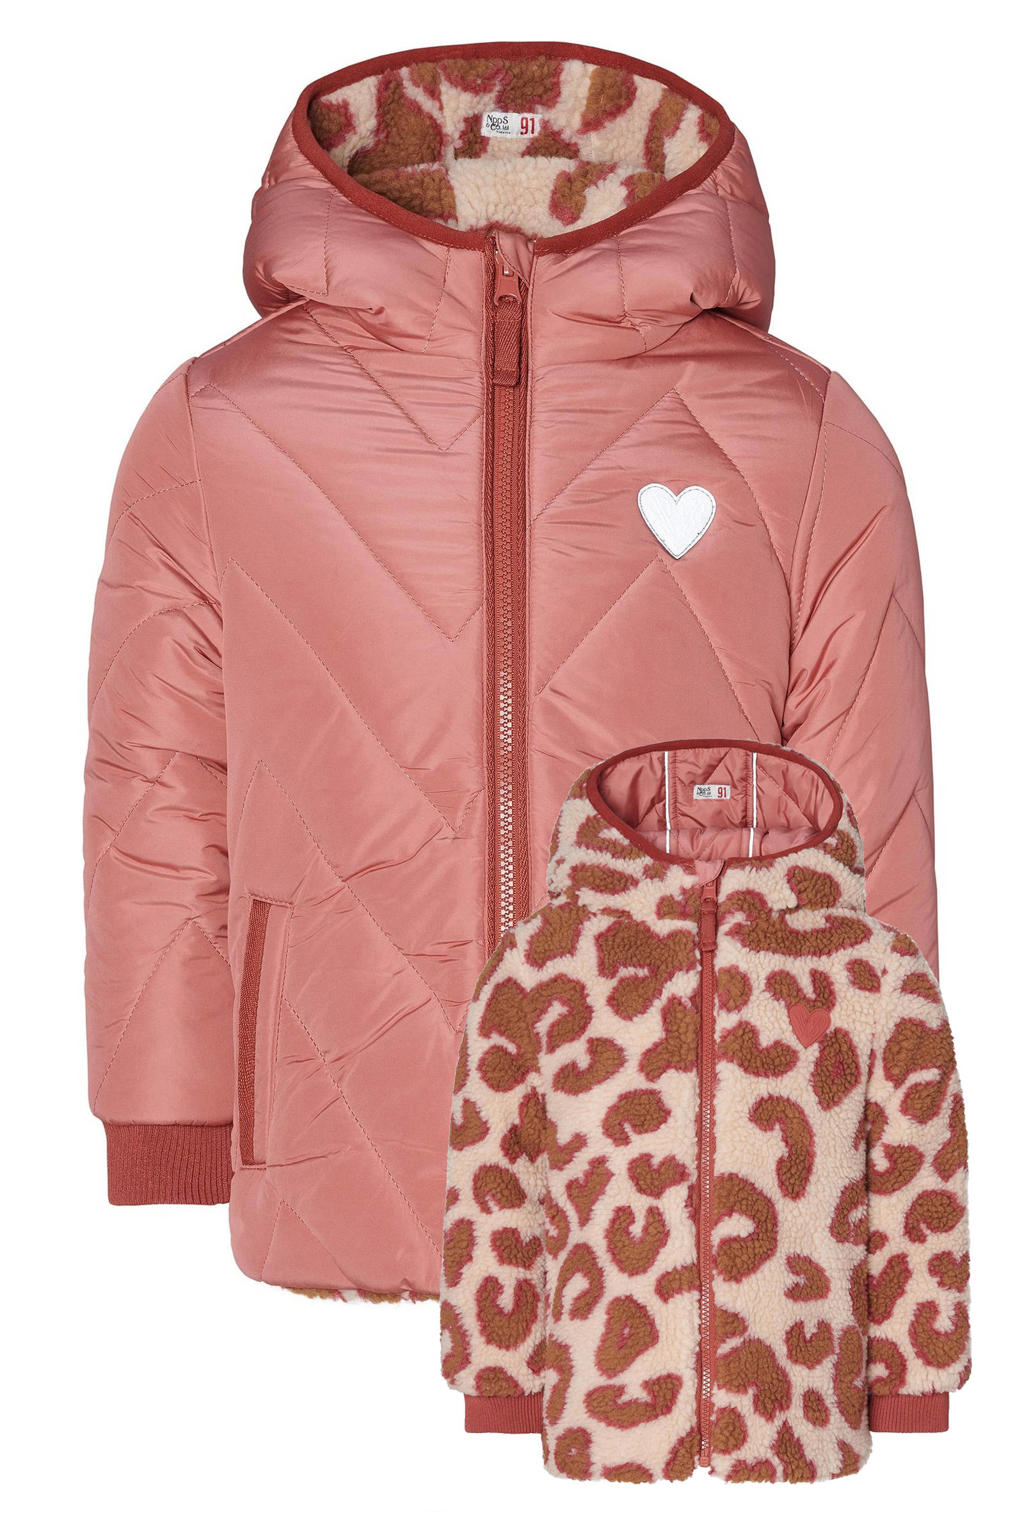 Noppies gewatteerde winterjas Nieuwaal met all over print roze/wit/bruin